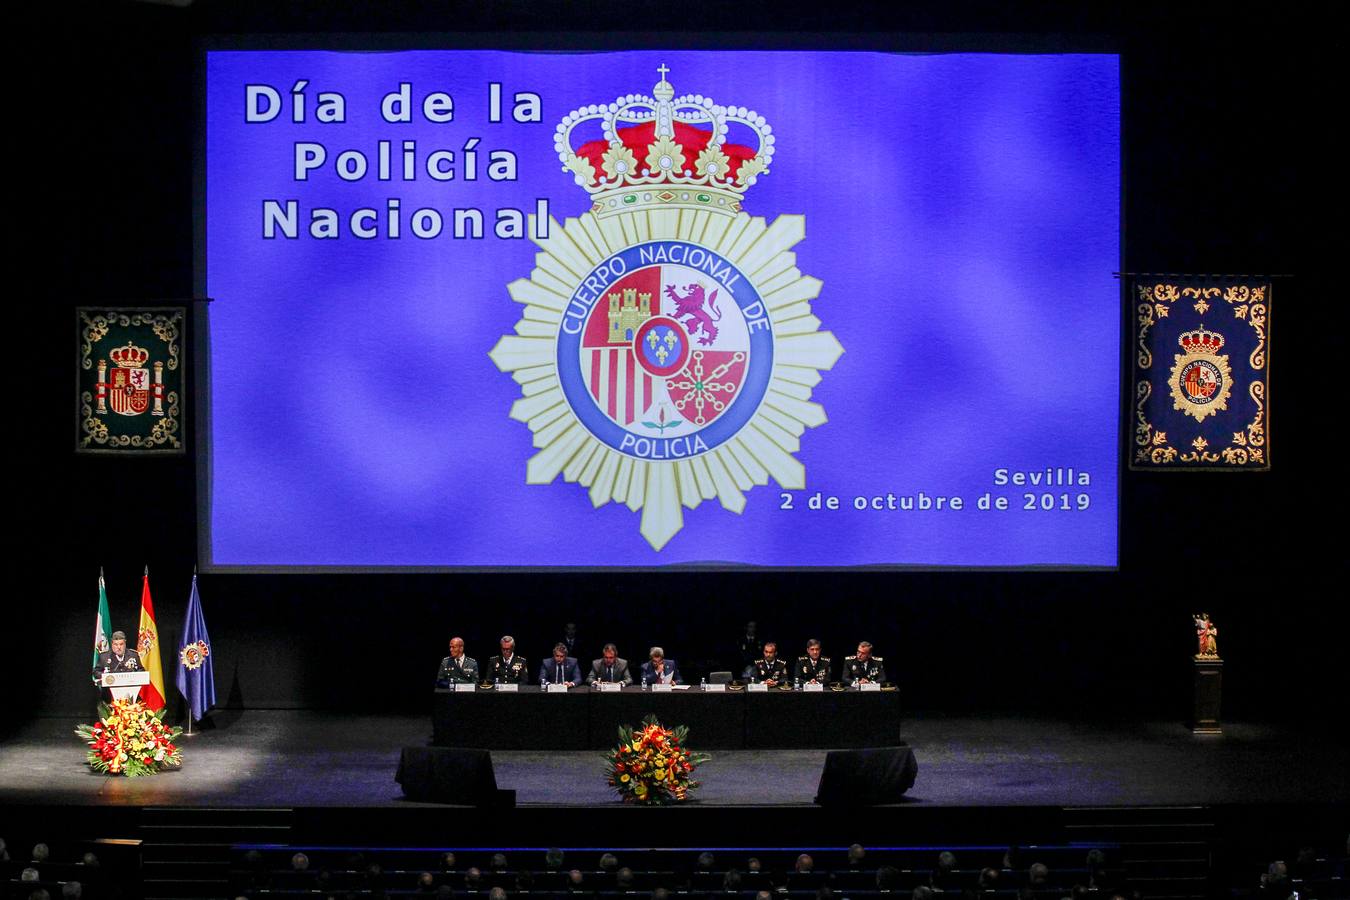 Celebración del Día de la Policía Nacional, en imágenes